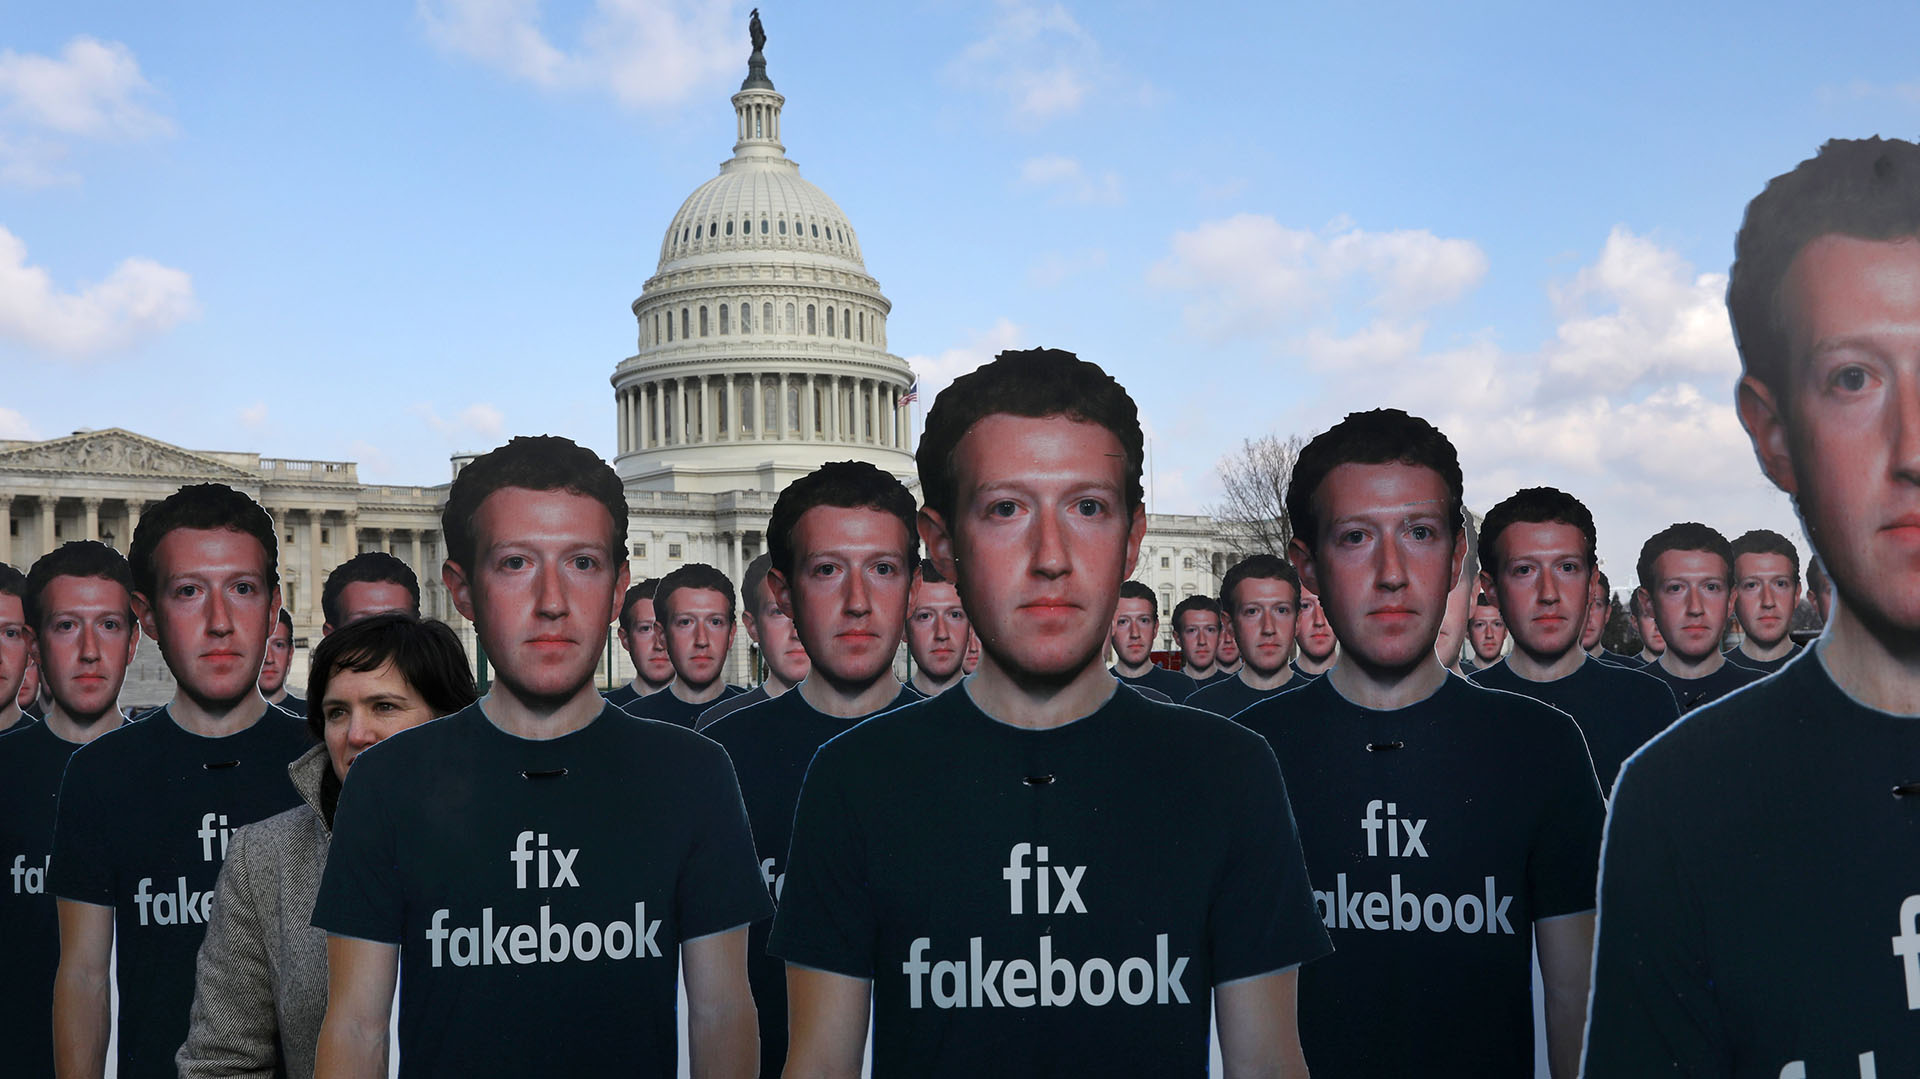 Las fotos de la protesta “Fix Fakebook” en Washington